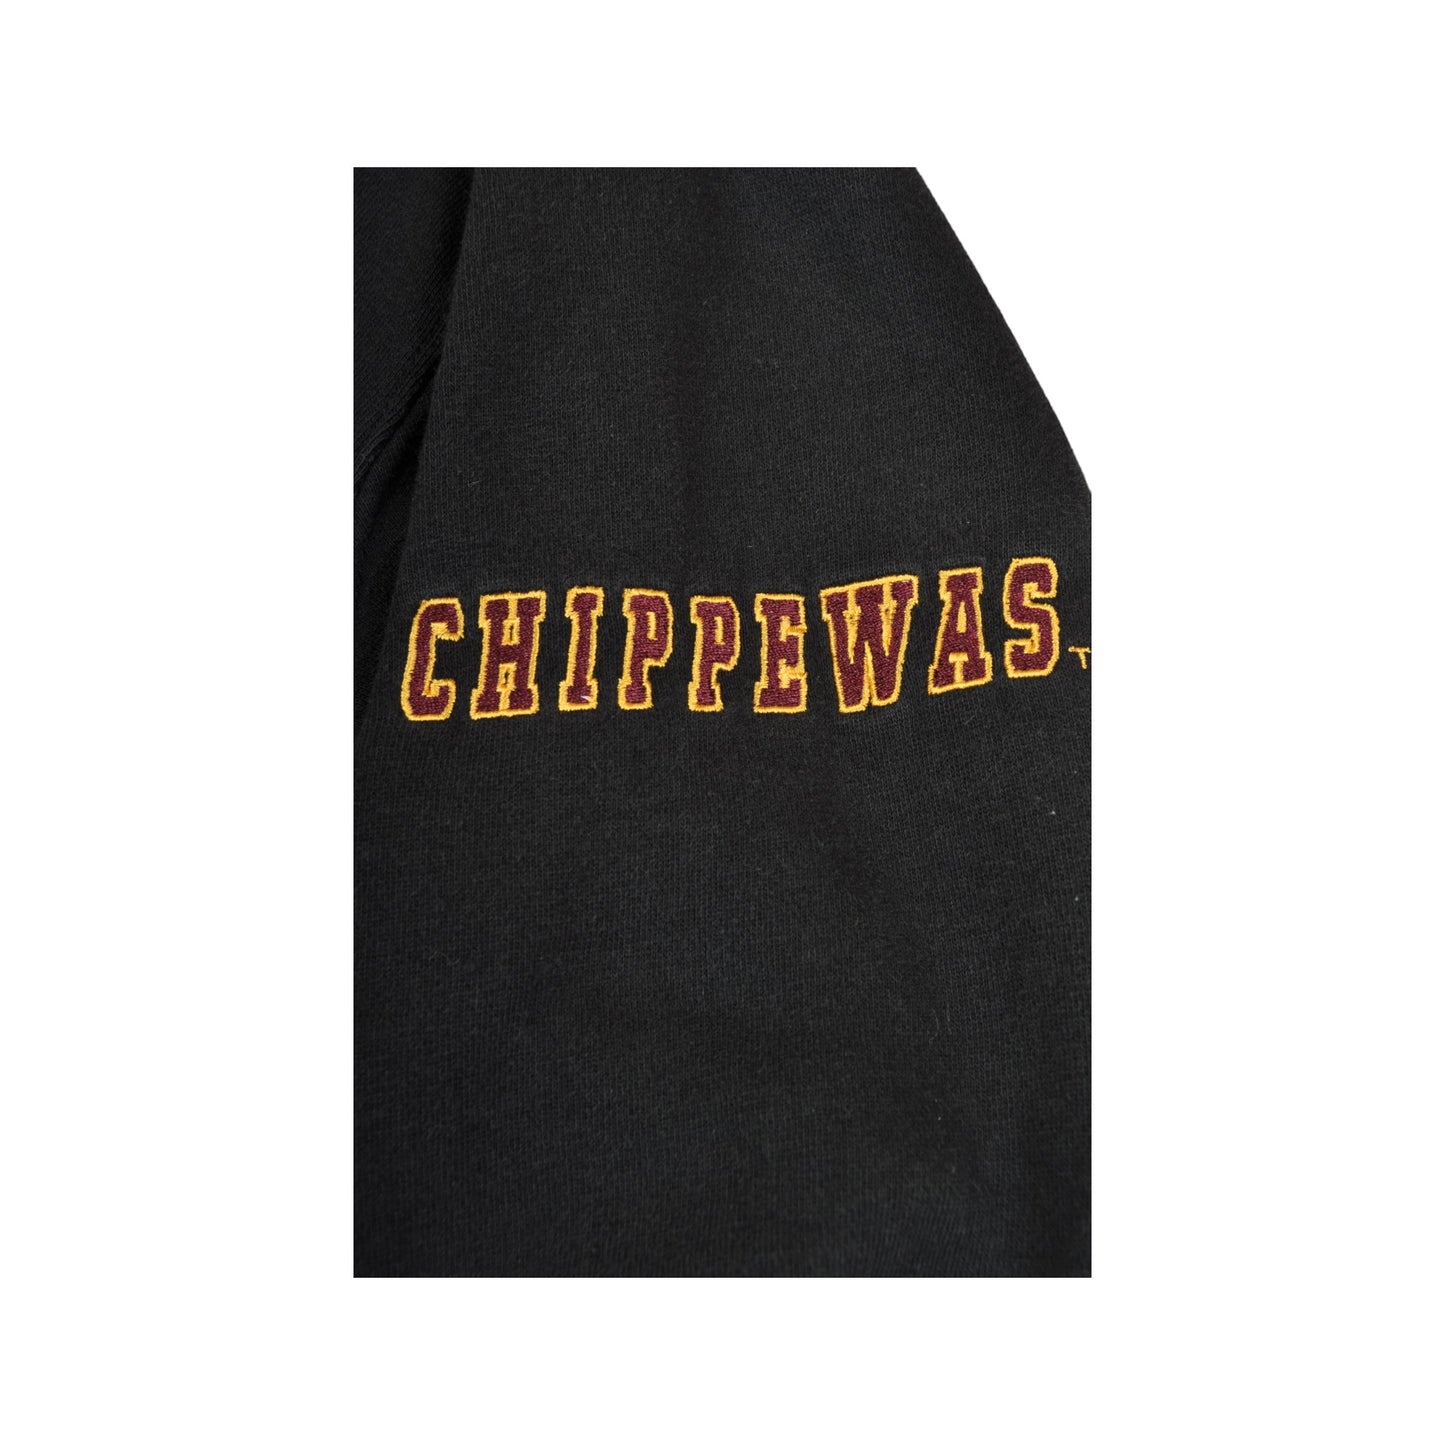 Vintage Central Michigan Chippewas Football Hoodie Sweatshirt Black Ladies Medium